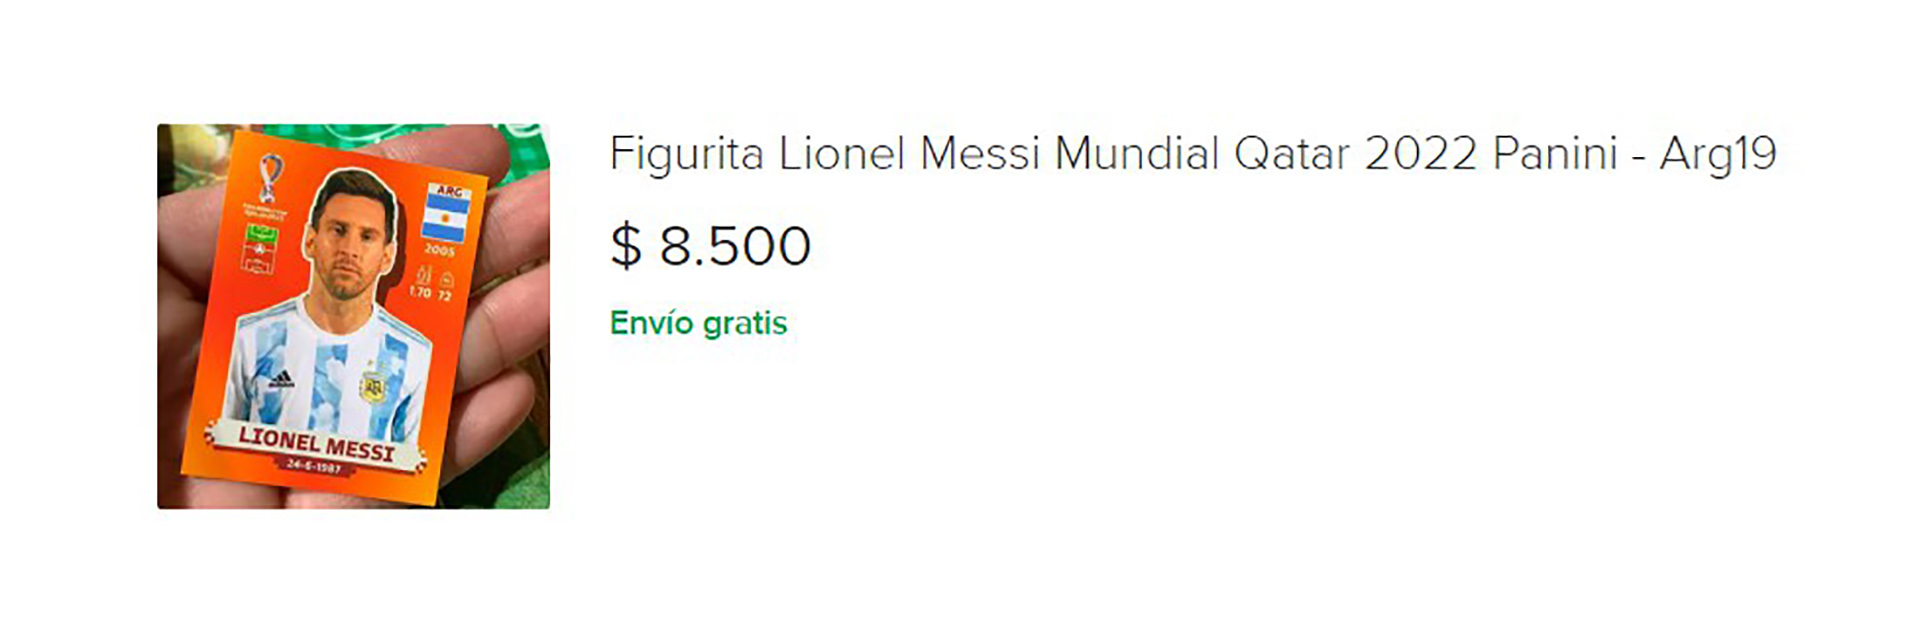 La figurita de Lionel Messi se vende a $8.500